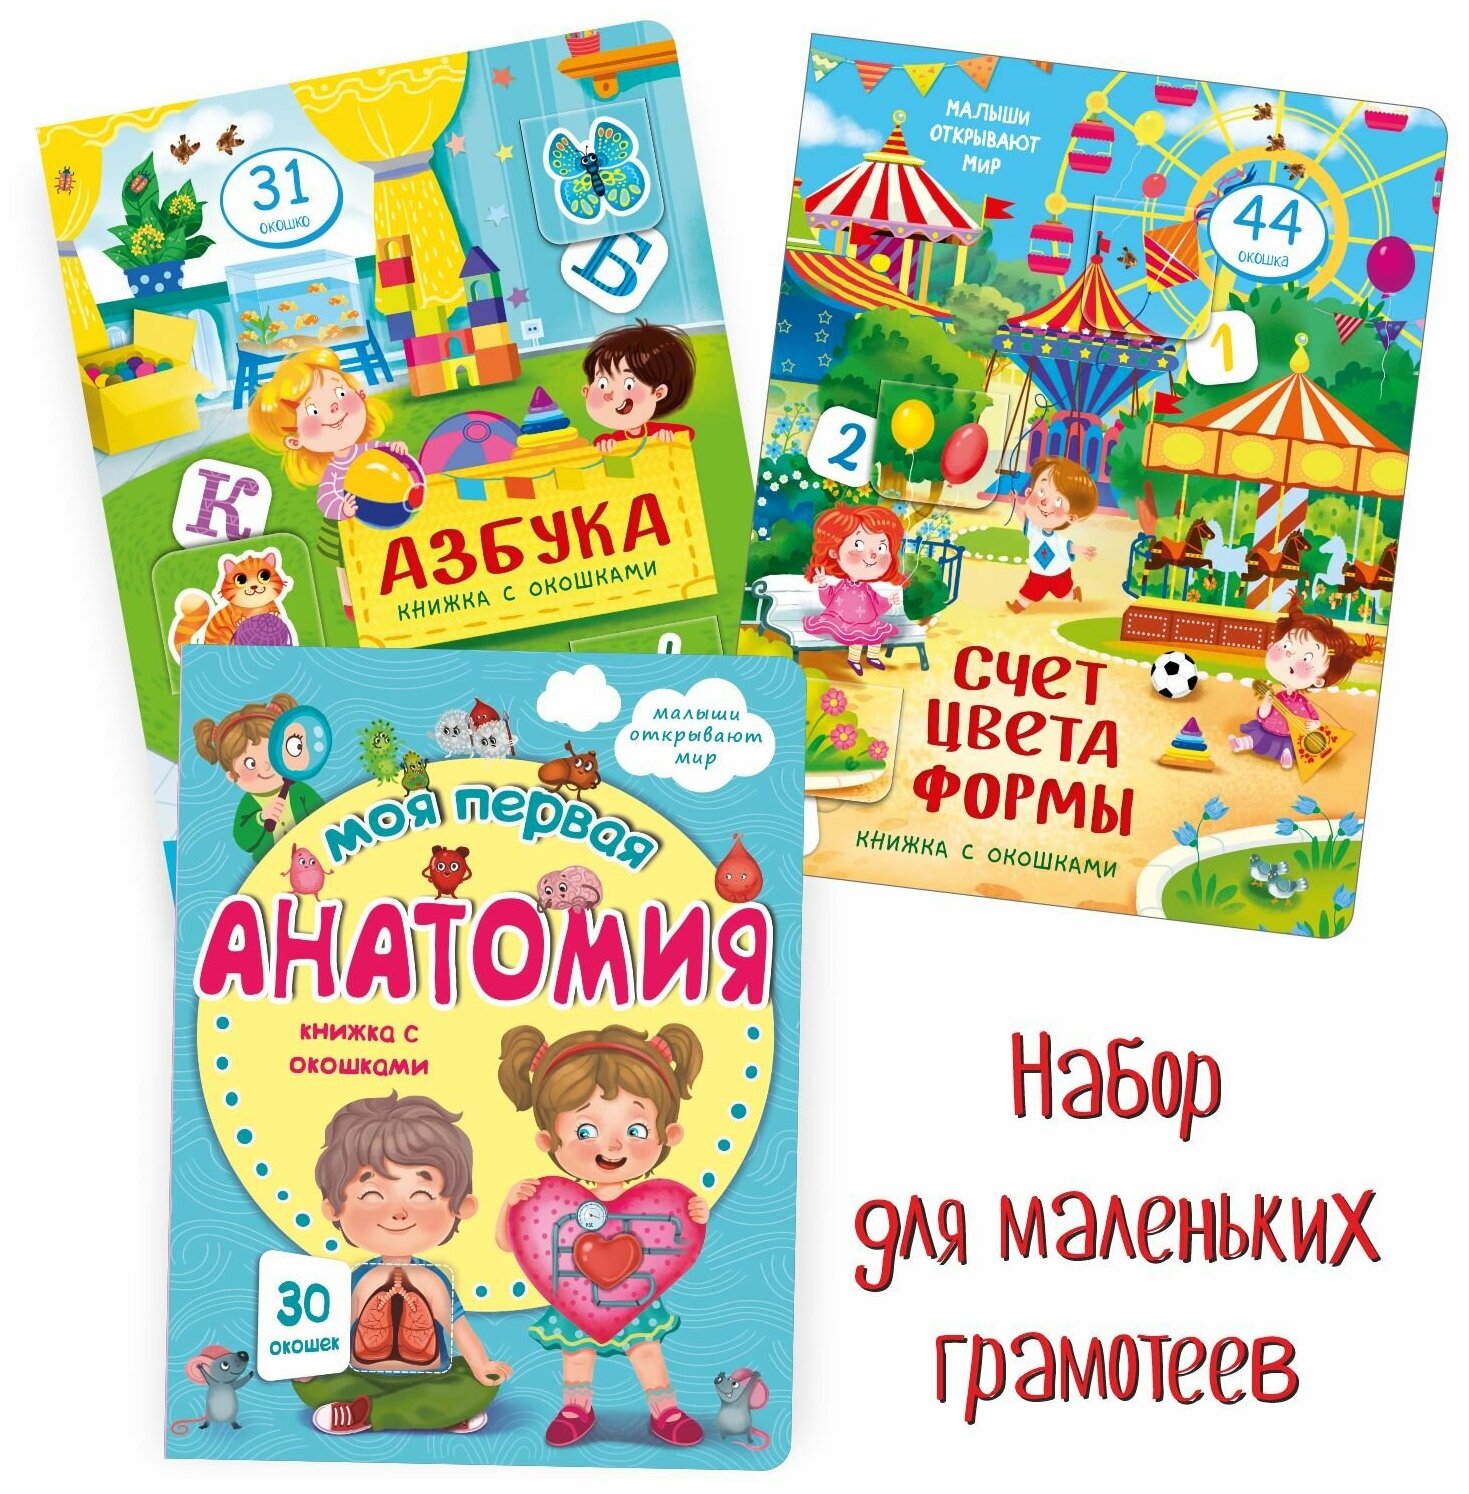 Детские книжки с окошками набор для маленьких грамотеев 3 книги. Подарок детям